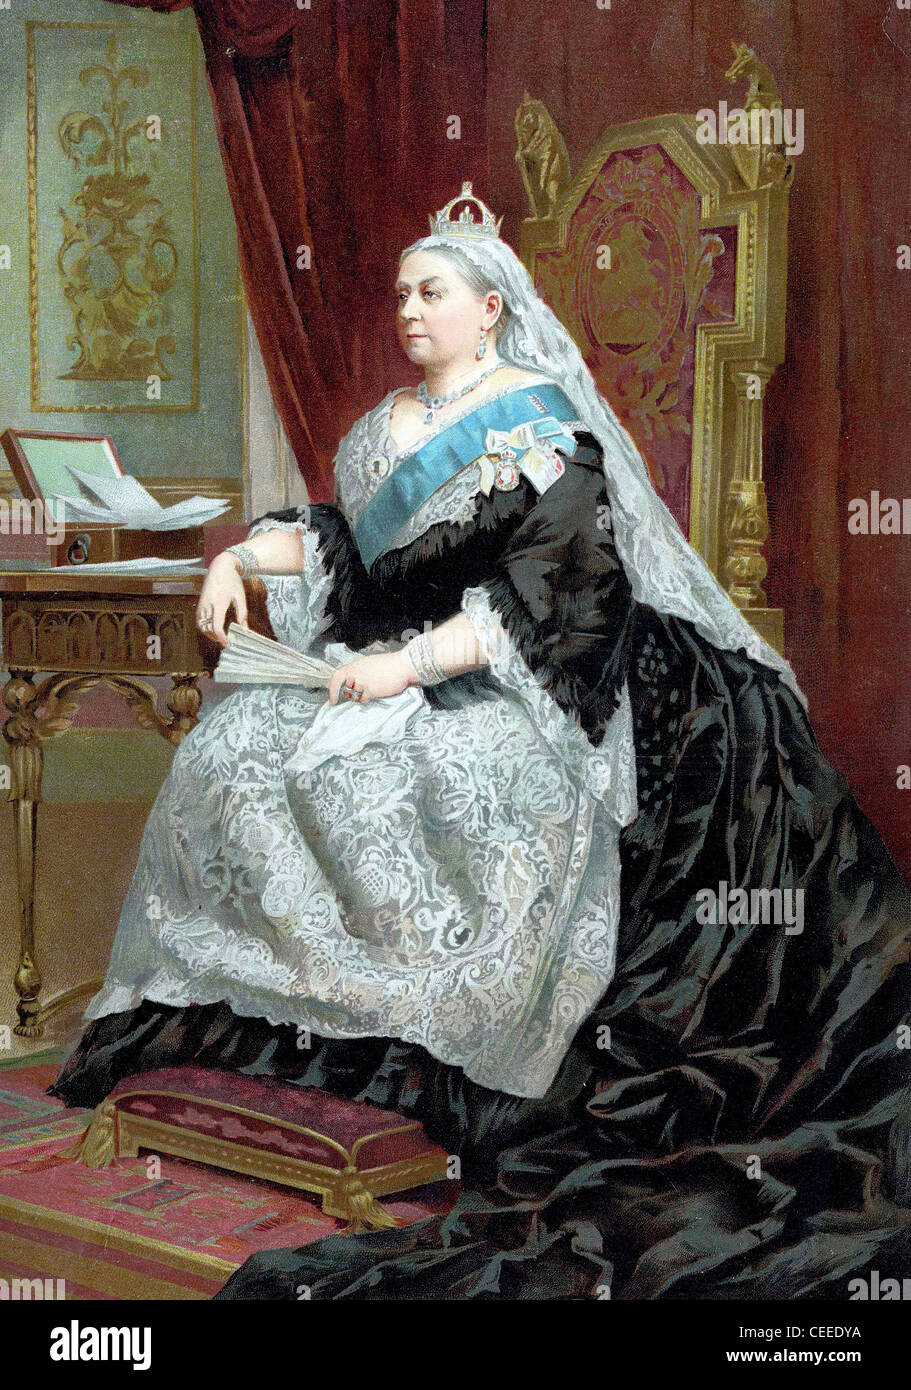 La reina Victoria (1819-1901), Reina del Reino Unido de 1837, emperatriz de la India desde 1876, coronado en 1838 Foto de stock